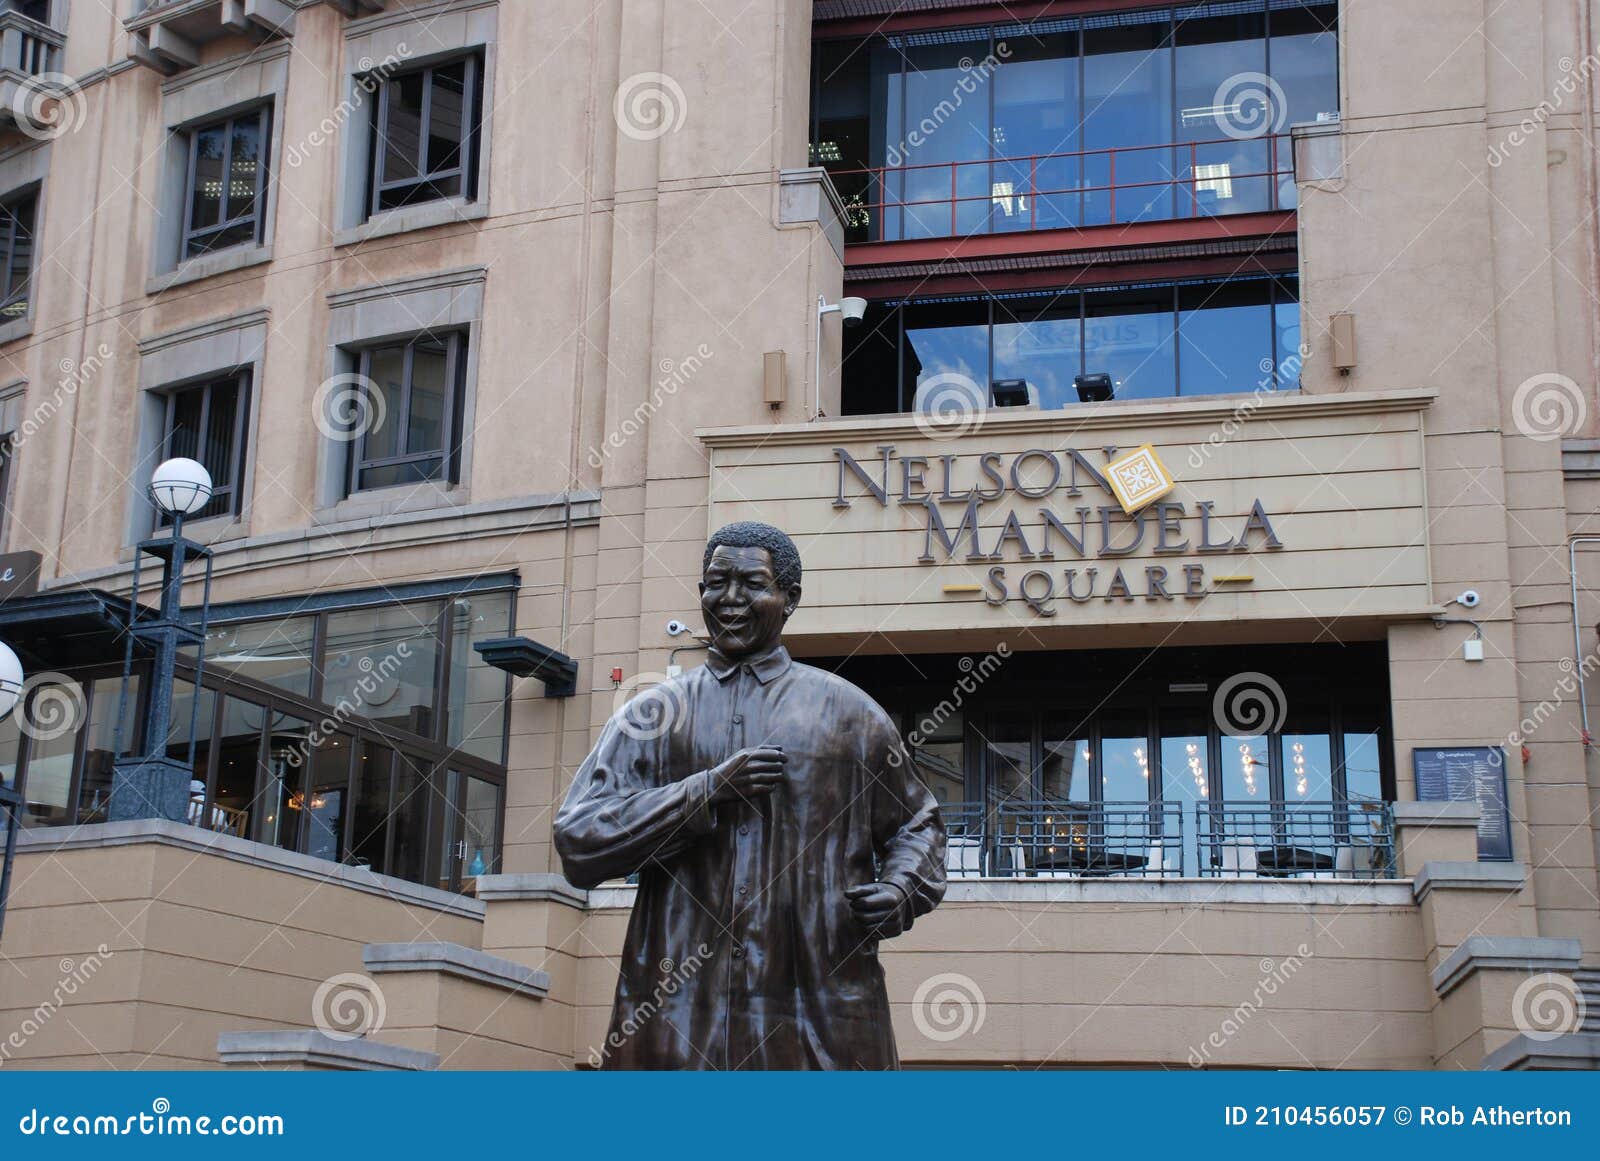 The Statue of Former President Nelson Mandela in Nelson Mandela Square ...